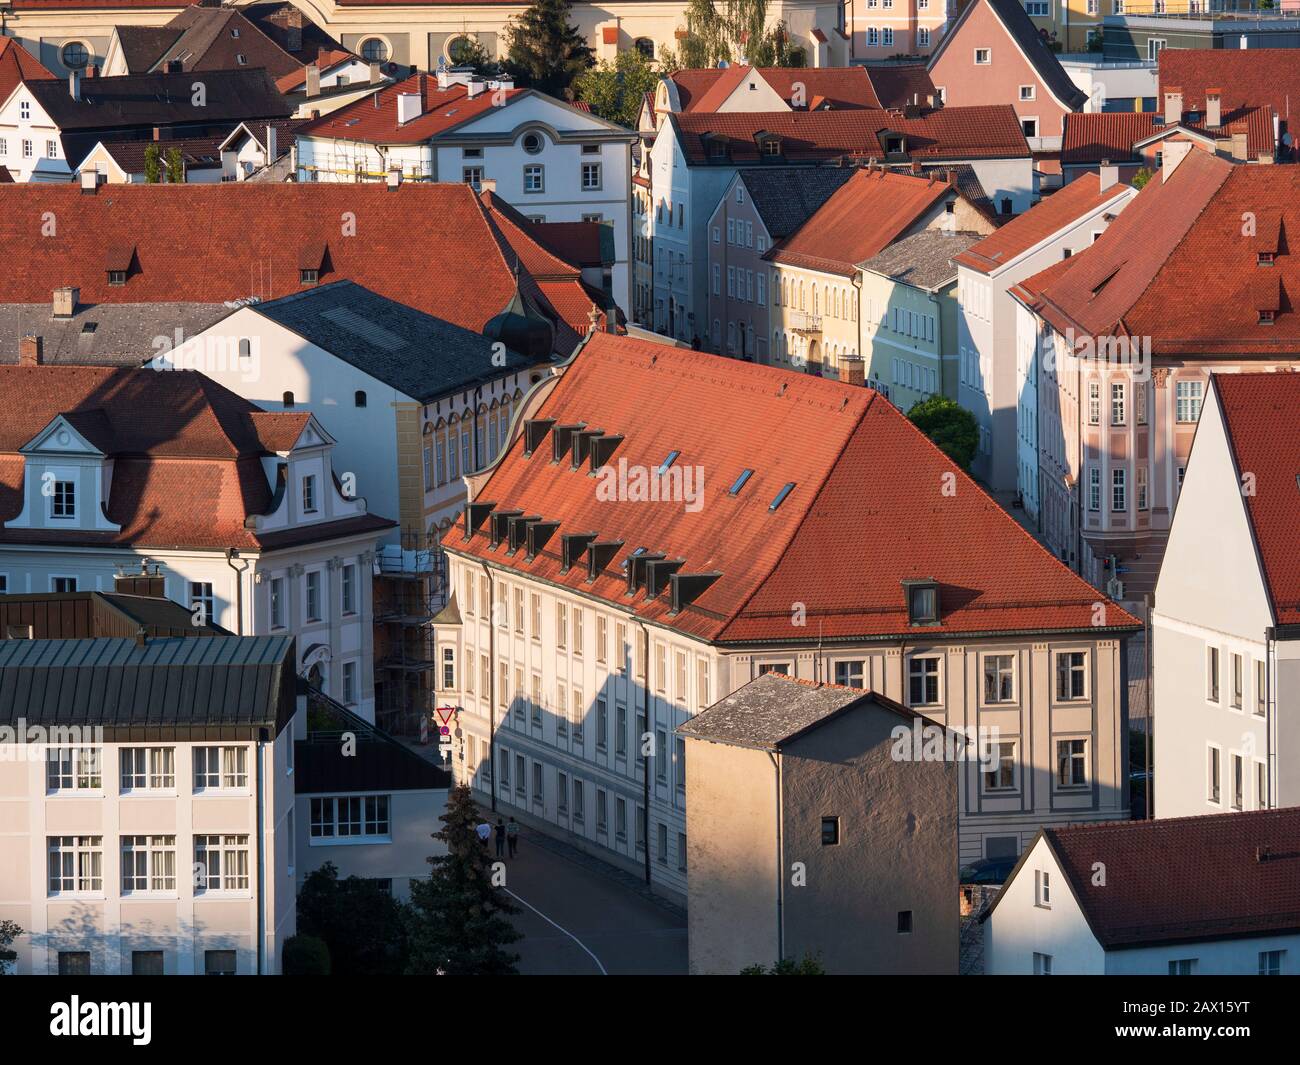 Blick auf die Altstadt, Eichstätt, Altmühltal, Bayern, Deutschland | Eichstaett old town, Altmuehltal, Bavaria, Germany Stock Photo